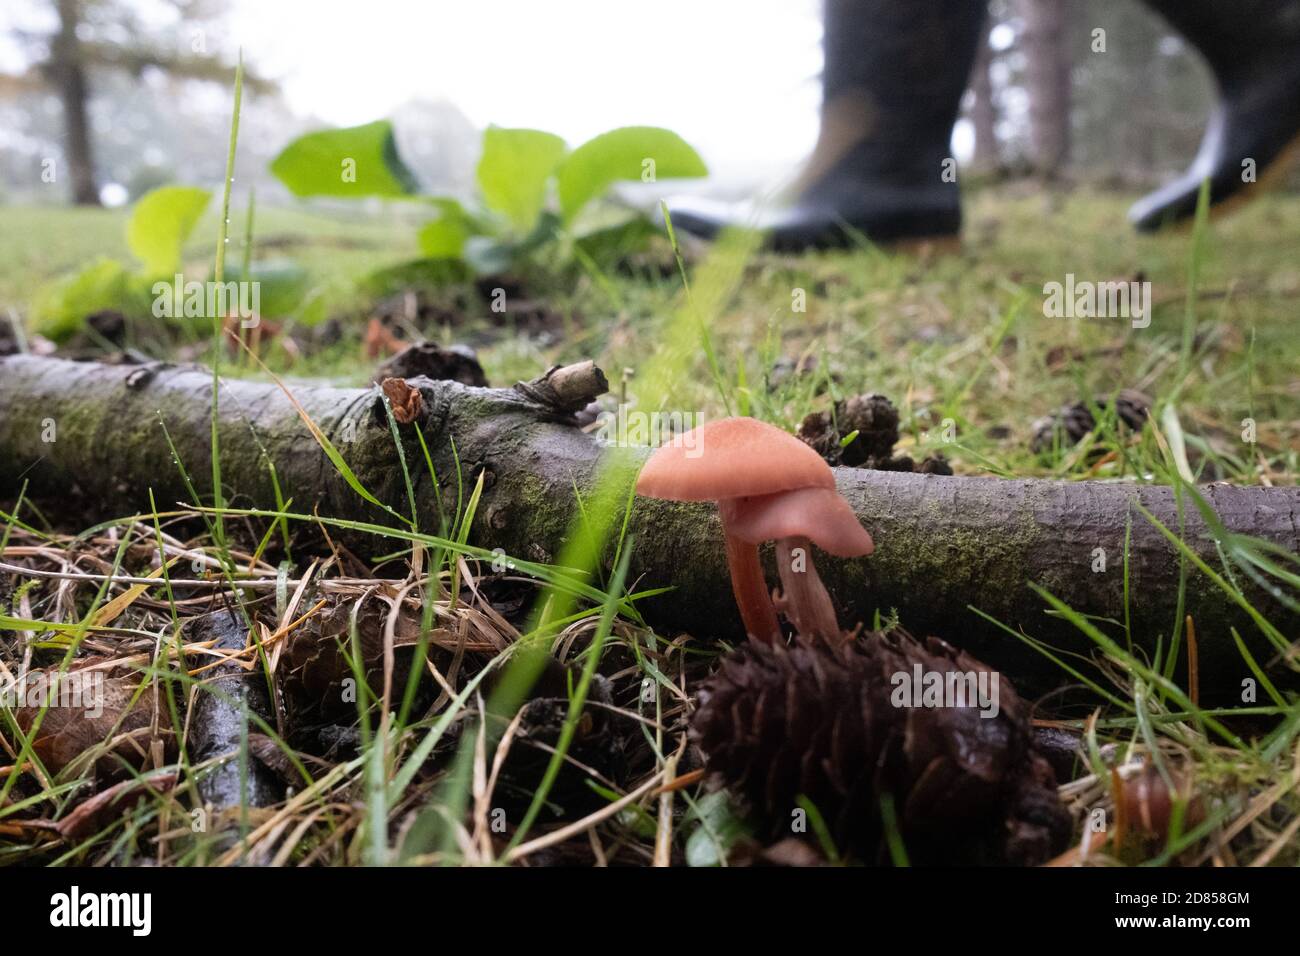 Alimentation dans la forêt en portant des bottes wellington, des champignons qui poussent dans l'index. New Forest, Hampshire, Angleterre, Royaume-Uni Banque D'Images